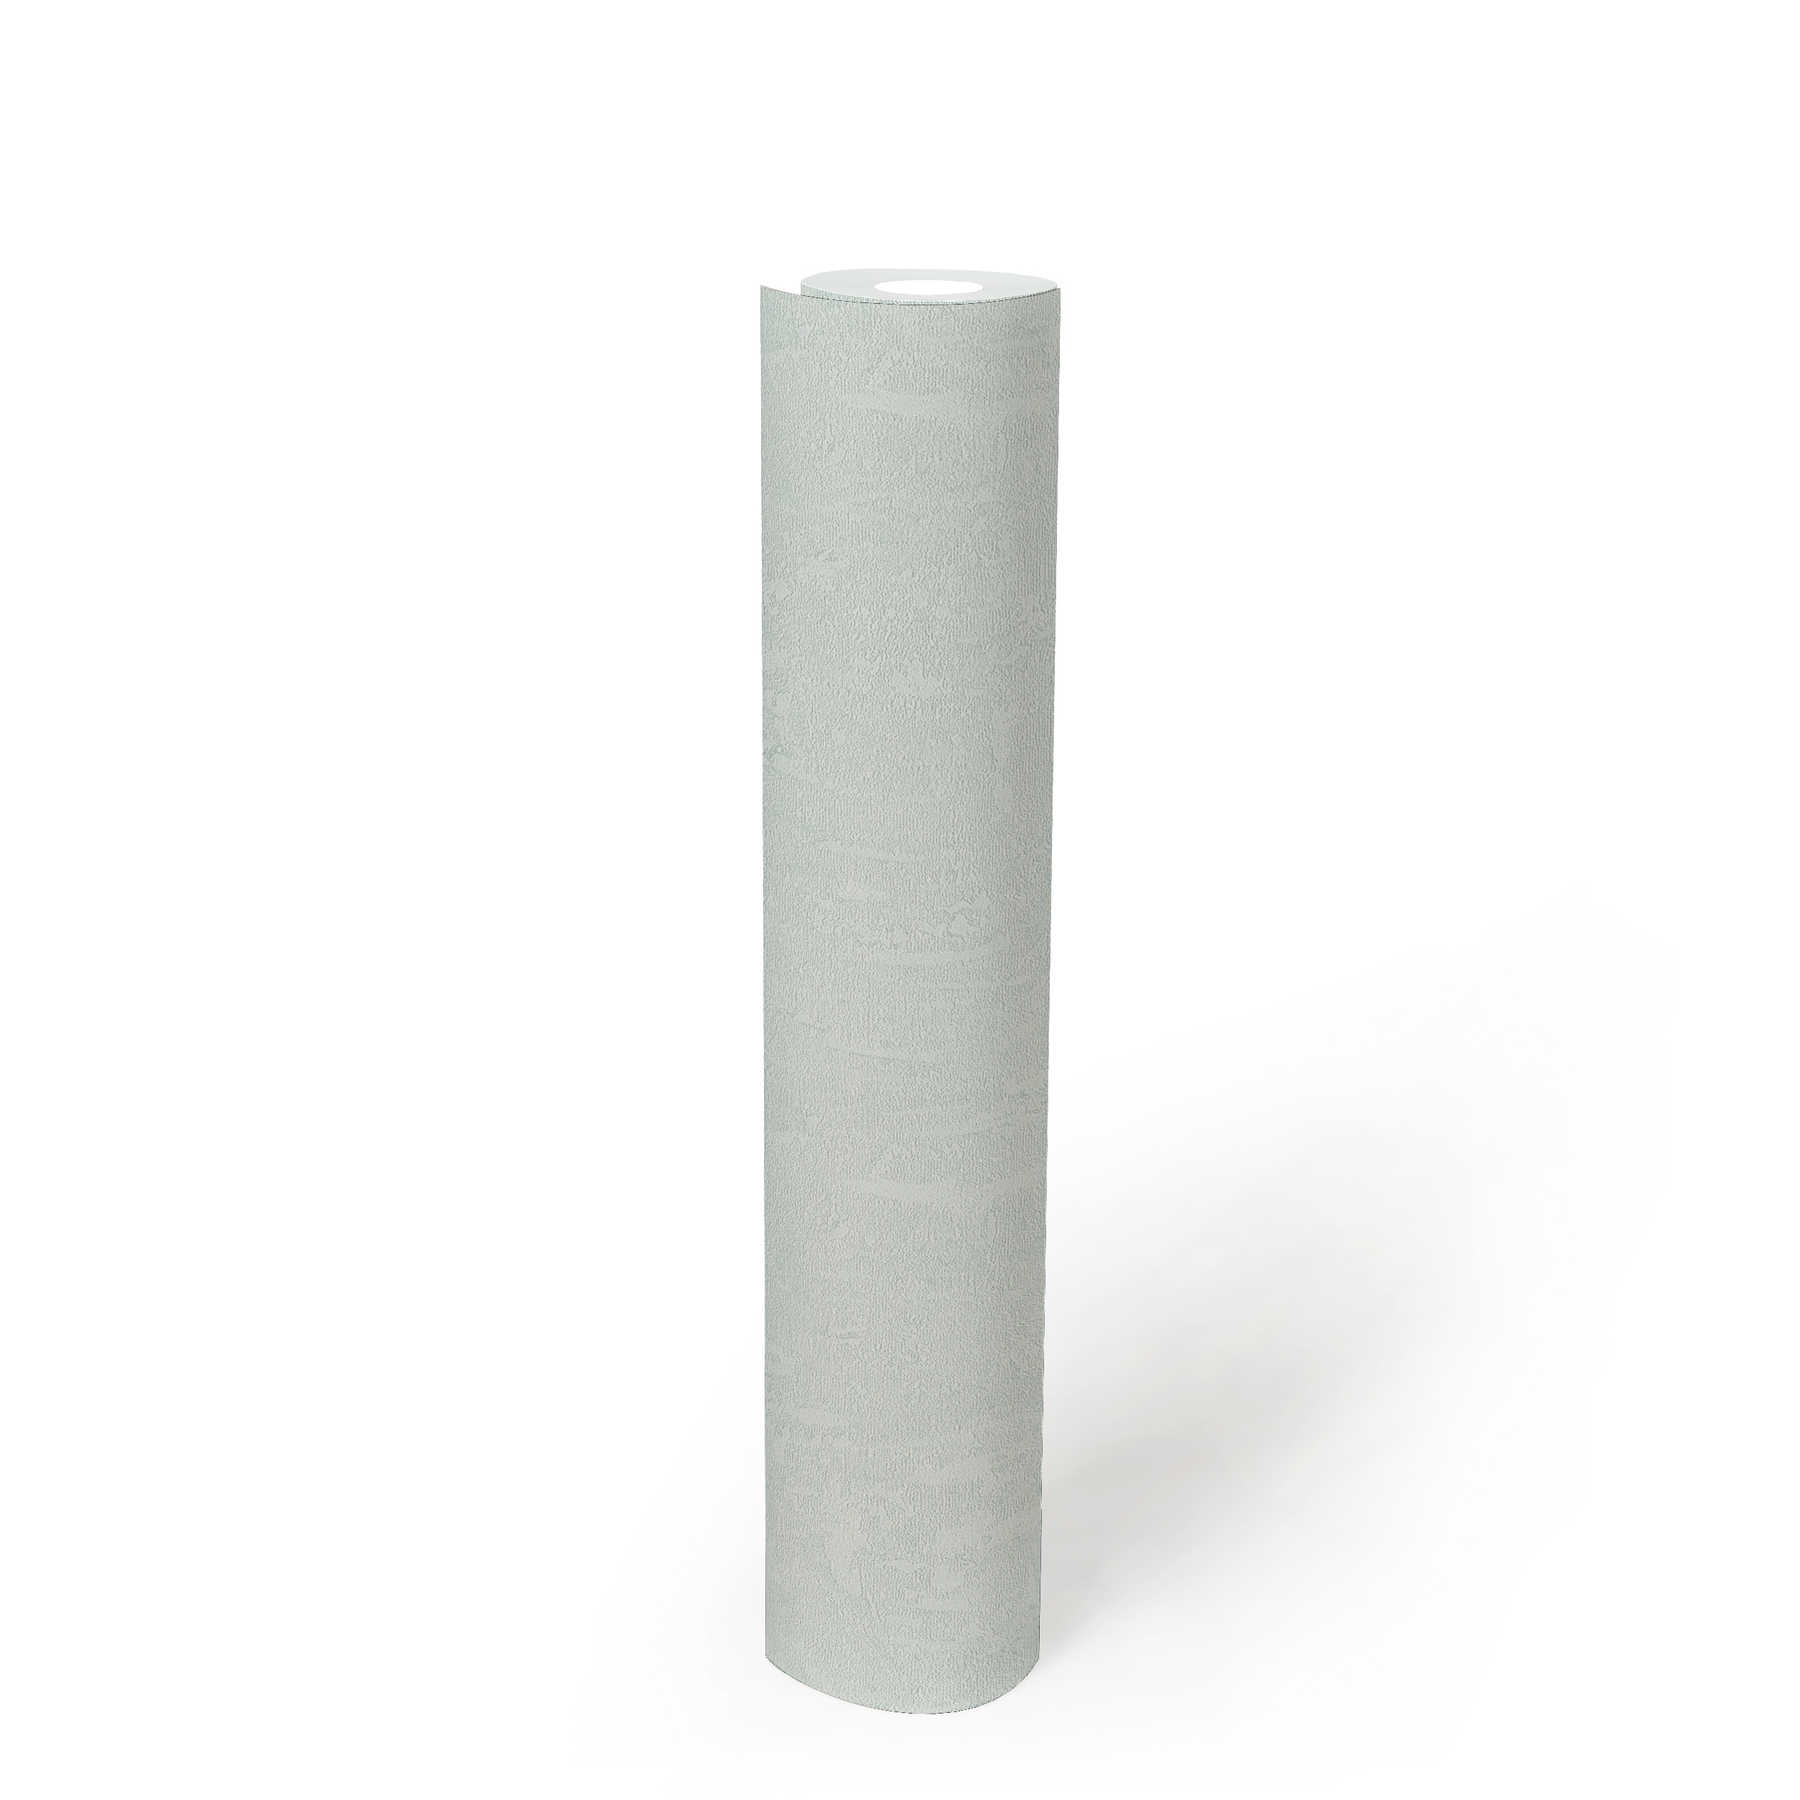             papier peint effet plâtre bleu clair blanc avec effet structuré
        